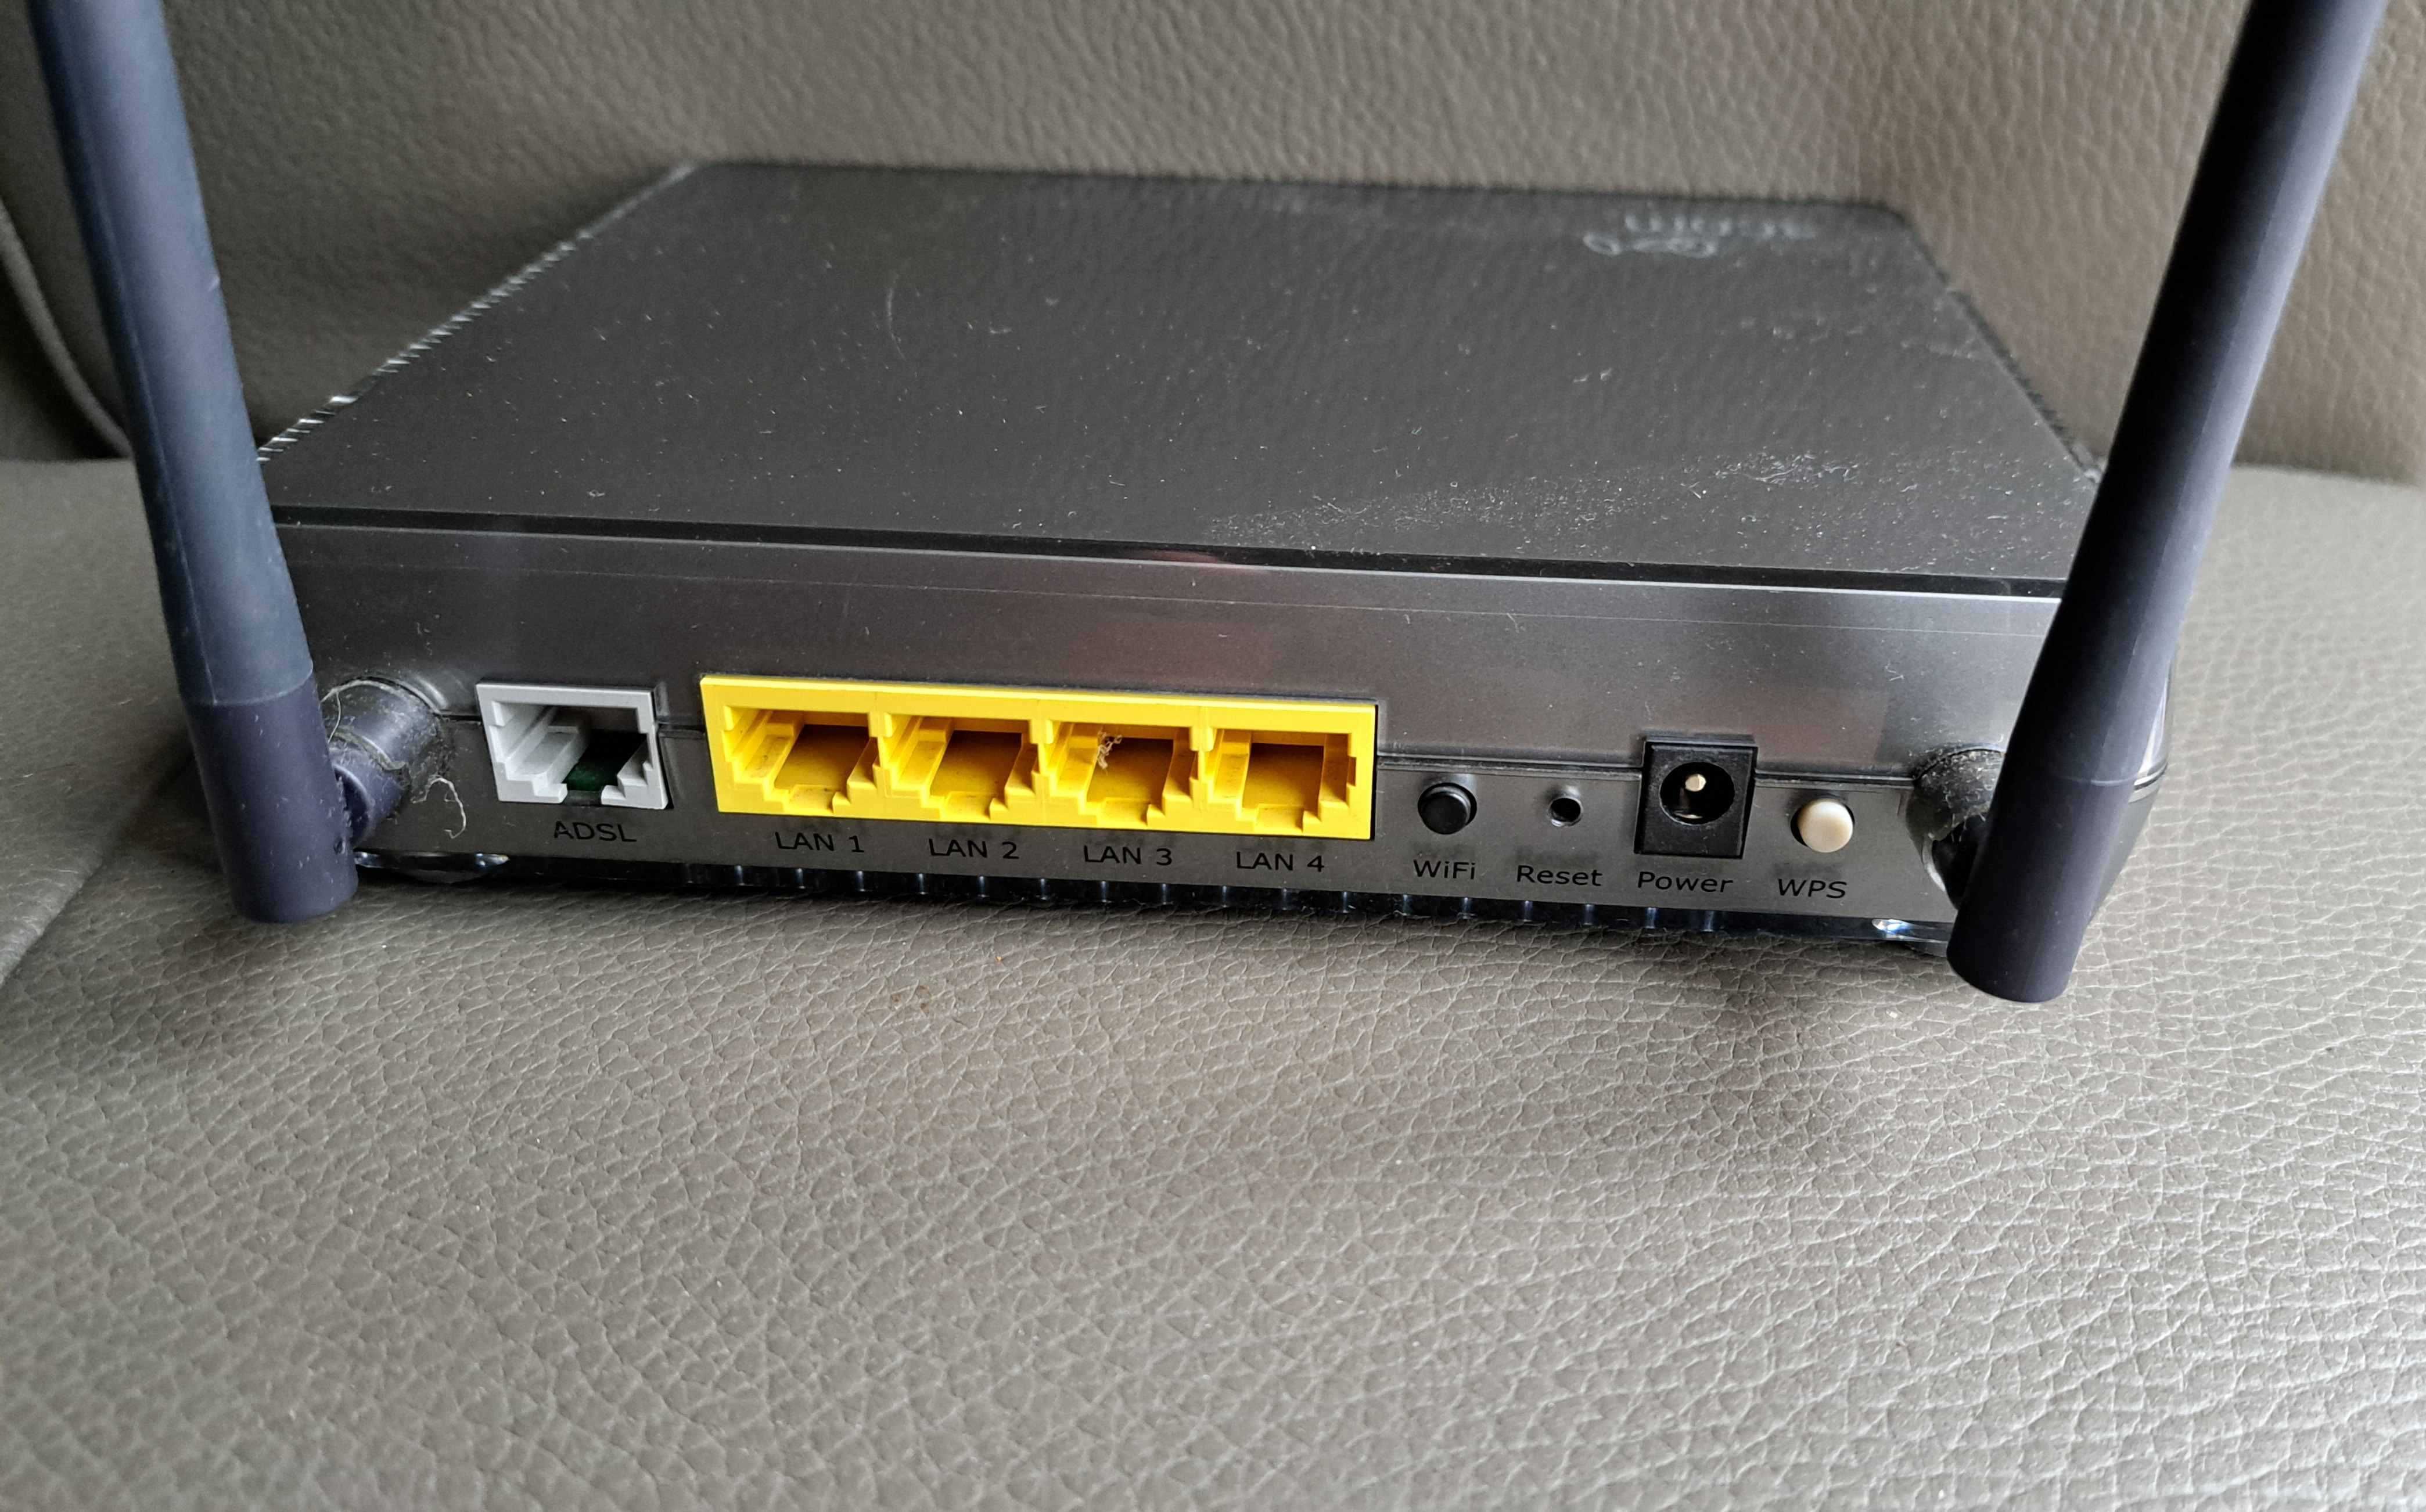 Router 3com DSL do kablówek UPC Vektra itp Podświetlane logo "3com"